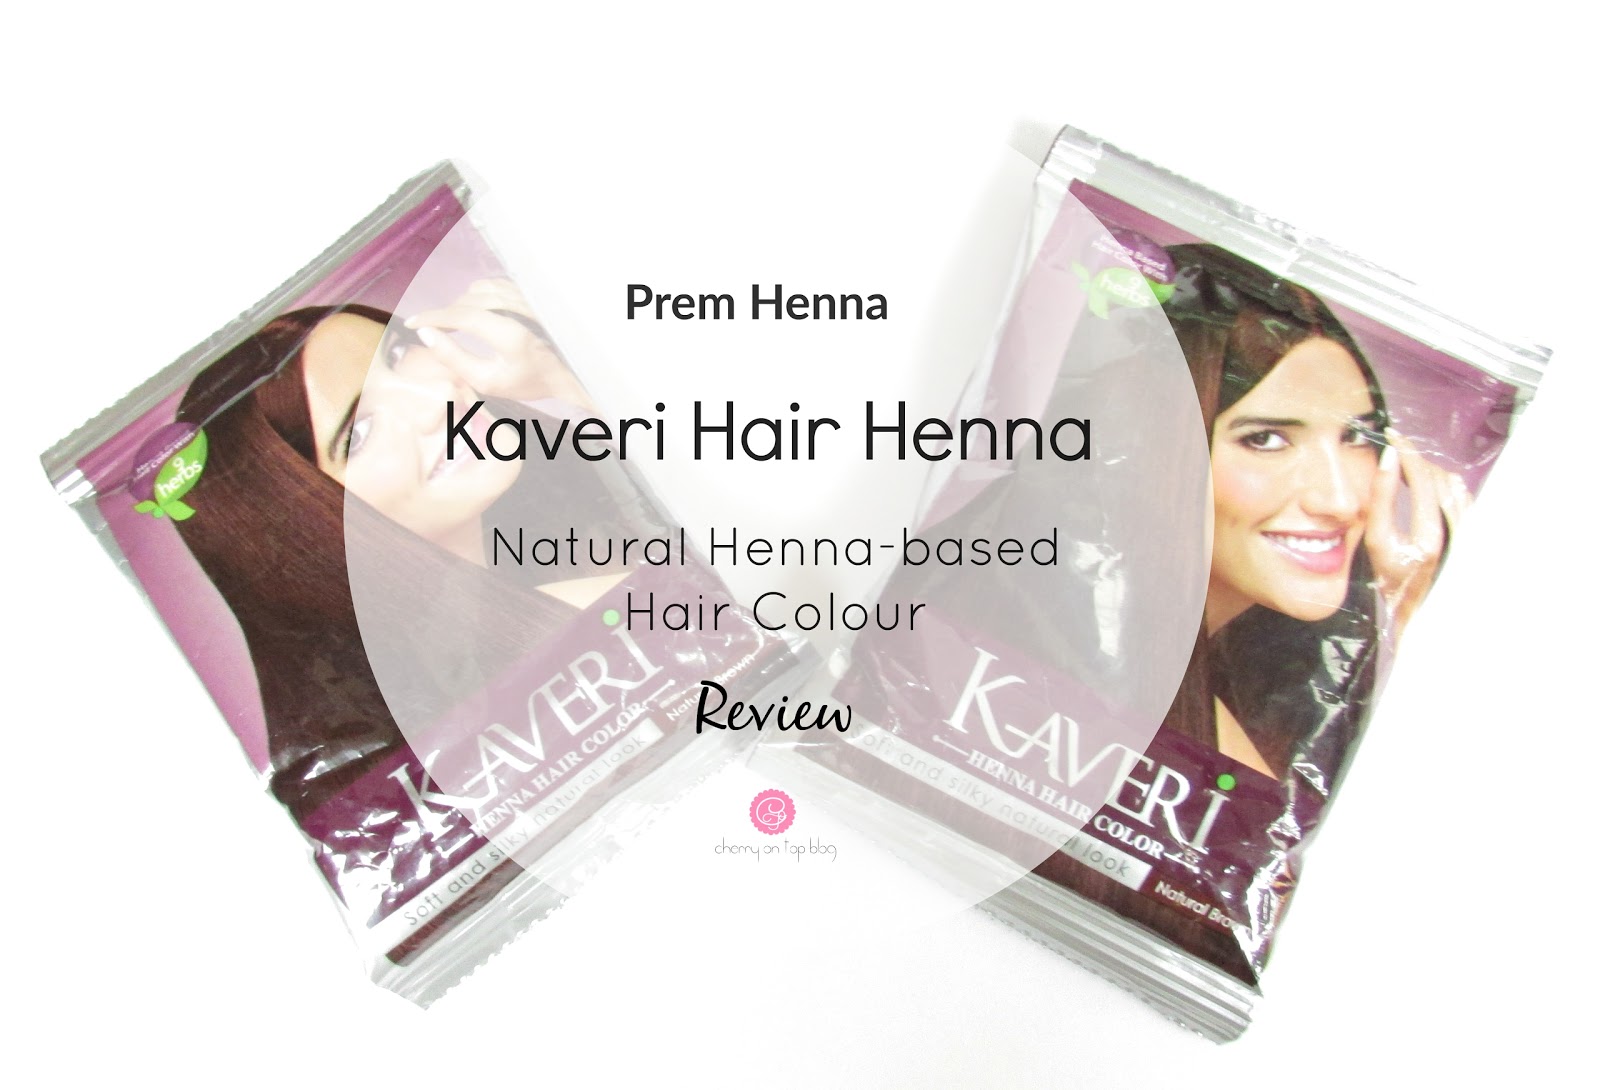 Prem Henna Kaveri Hair Henna Review| cherryontopblog